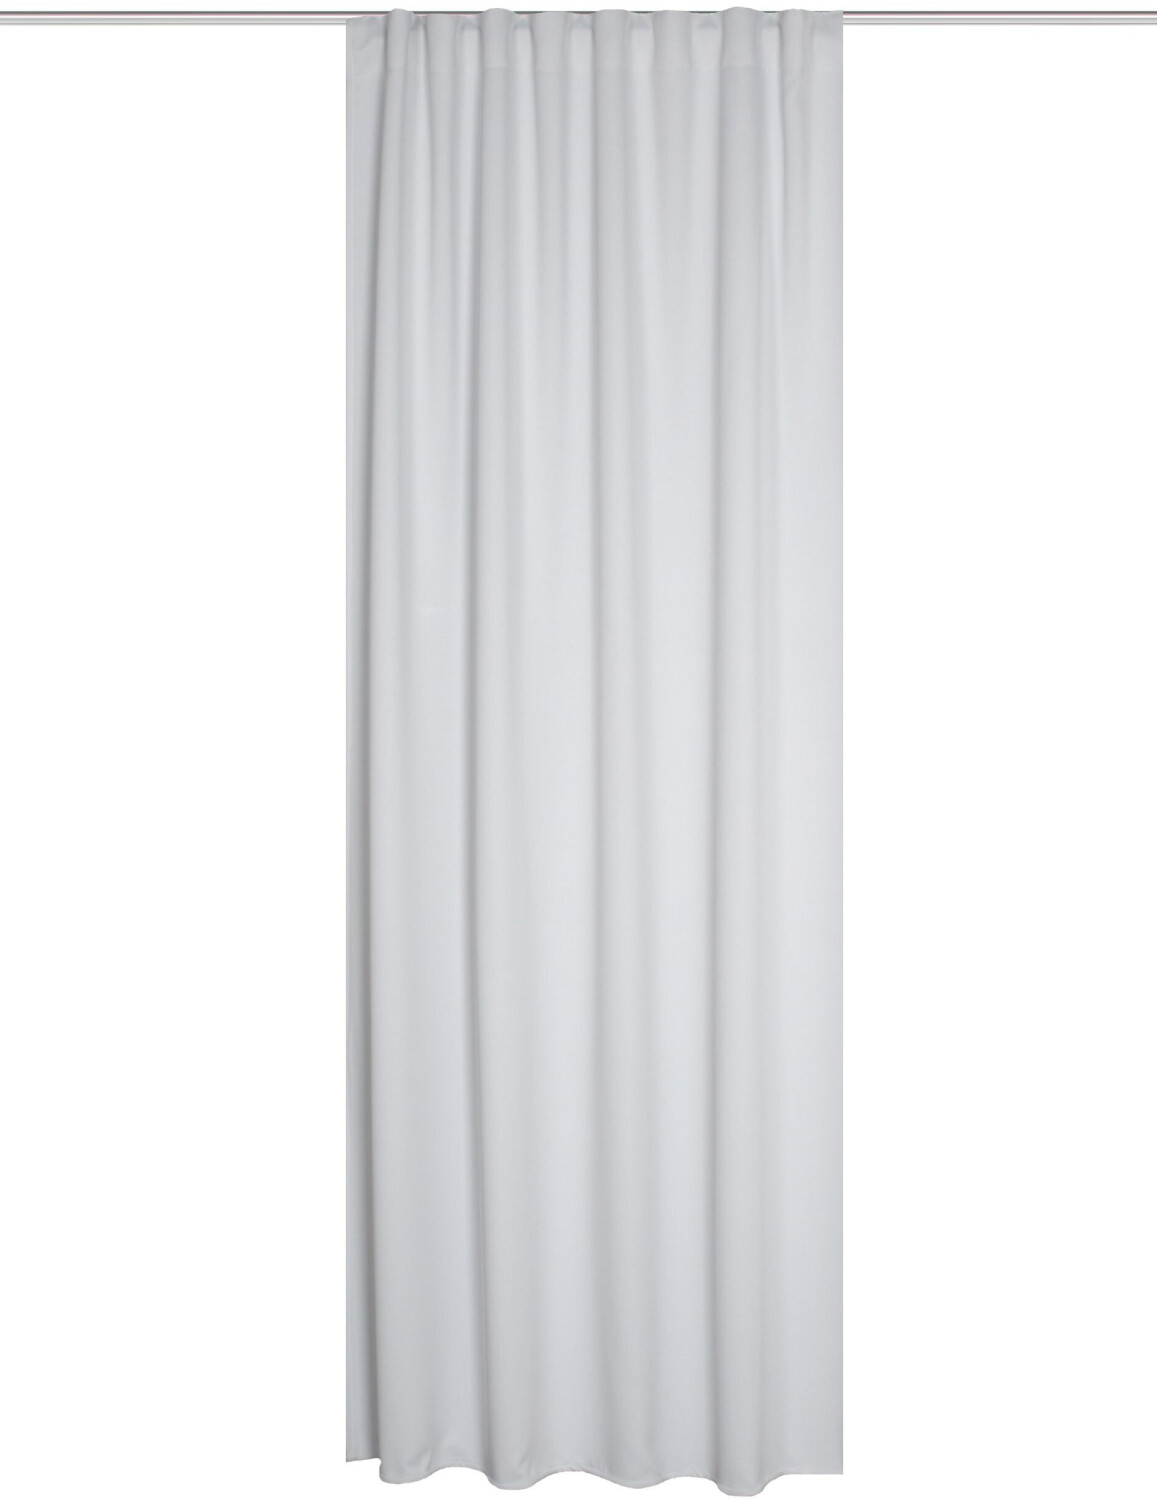 Home Fashion x Preisvergleich Universalband Vorhang | Blacky schwer ab 245 135 entflammbar cm dunkelblau mit 34,95 bei €